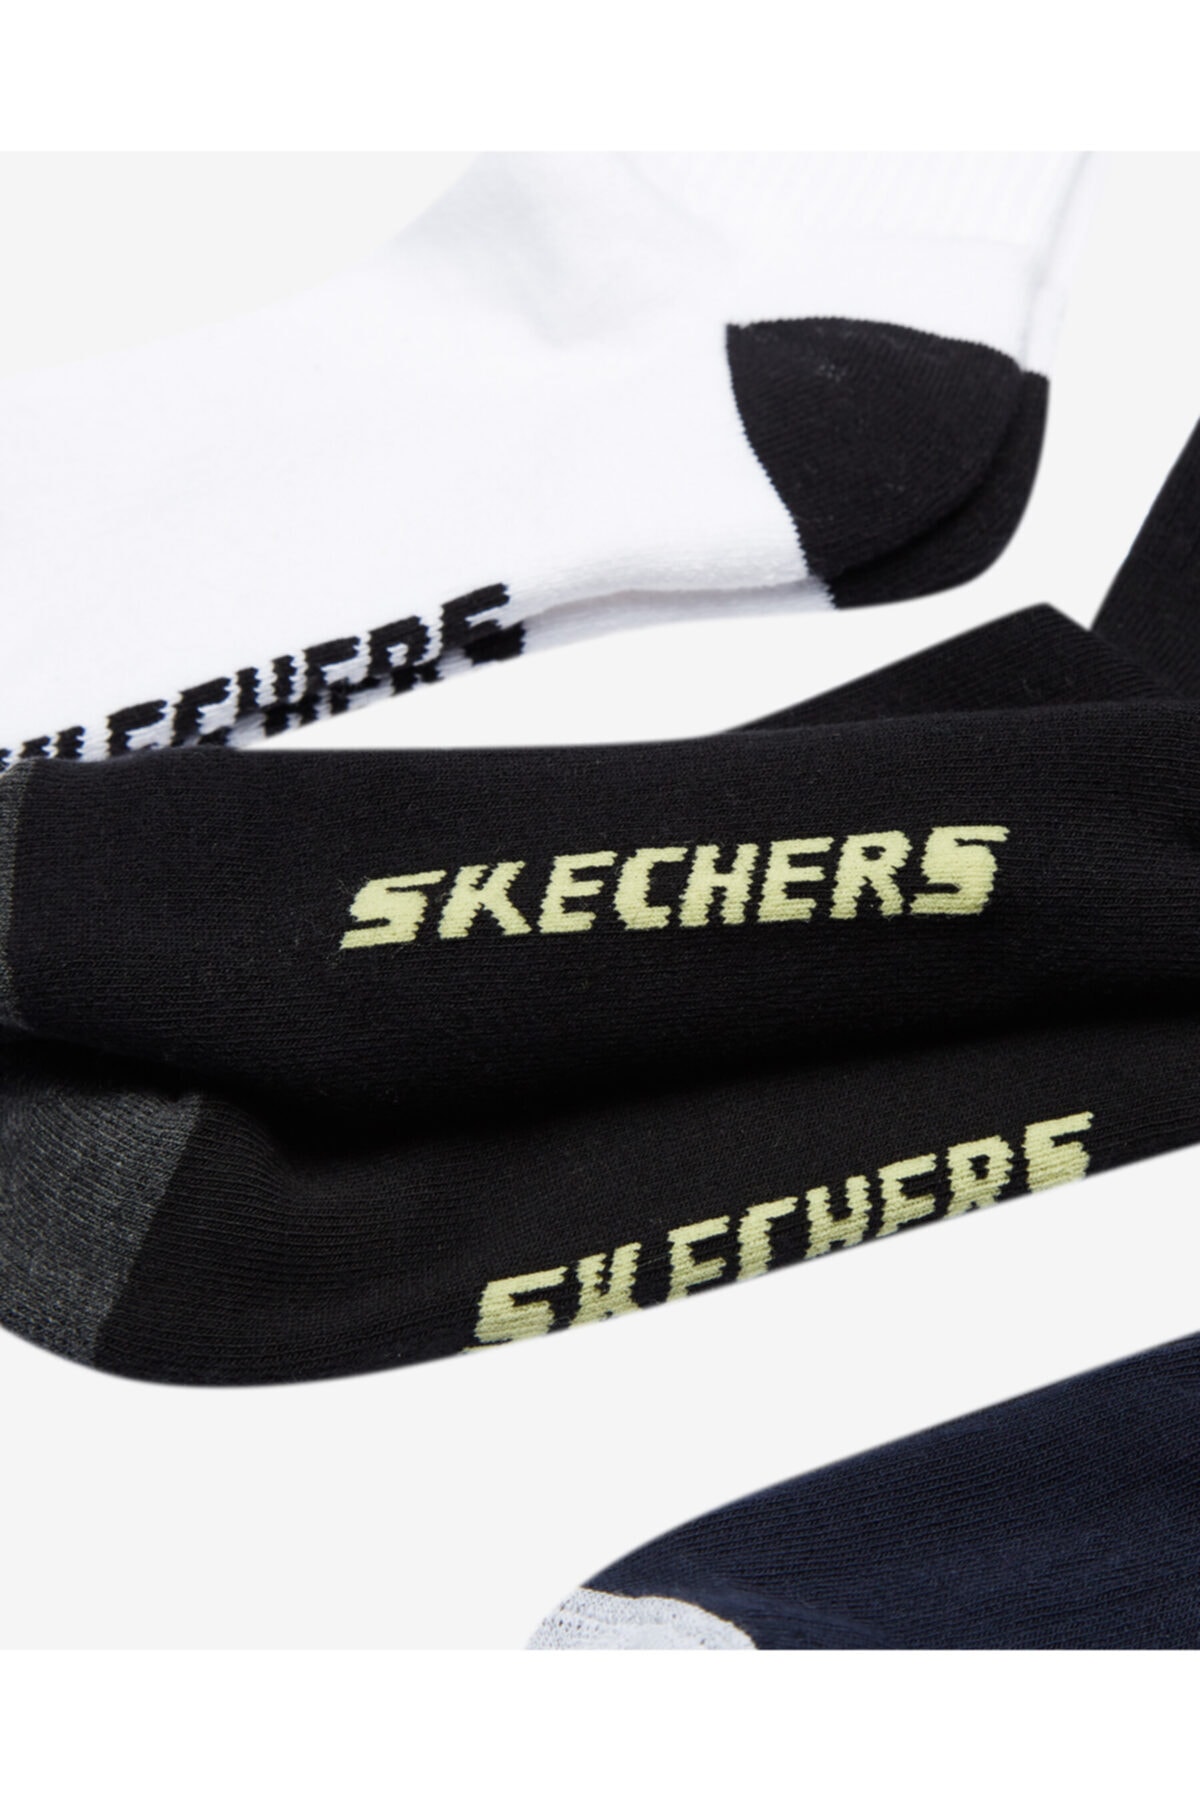 SKECHERS M S Logo Crew Cut Socks 3 Pack Erkek Çok Renkli Çorap - S201318-900 ZO9492